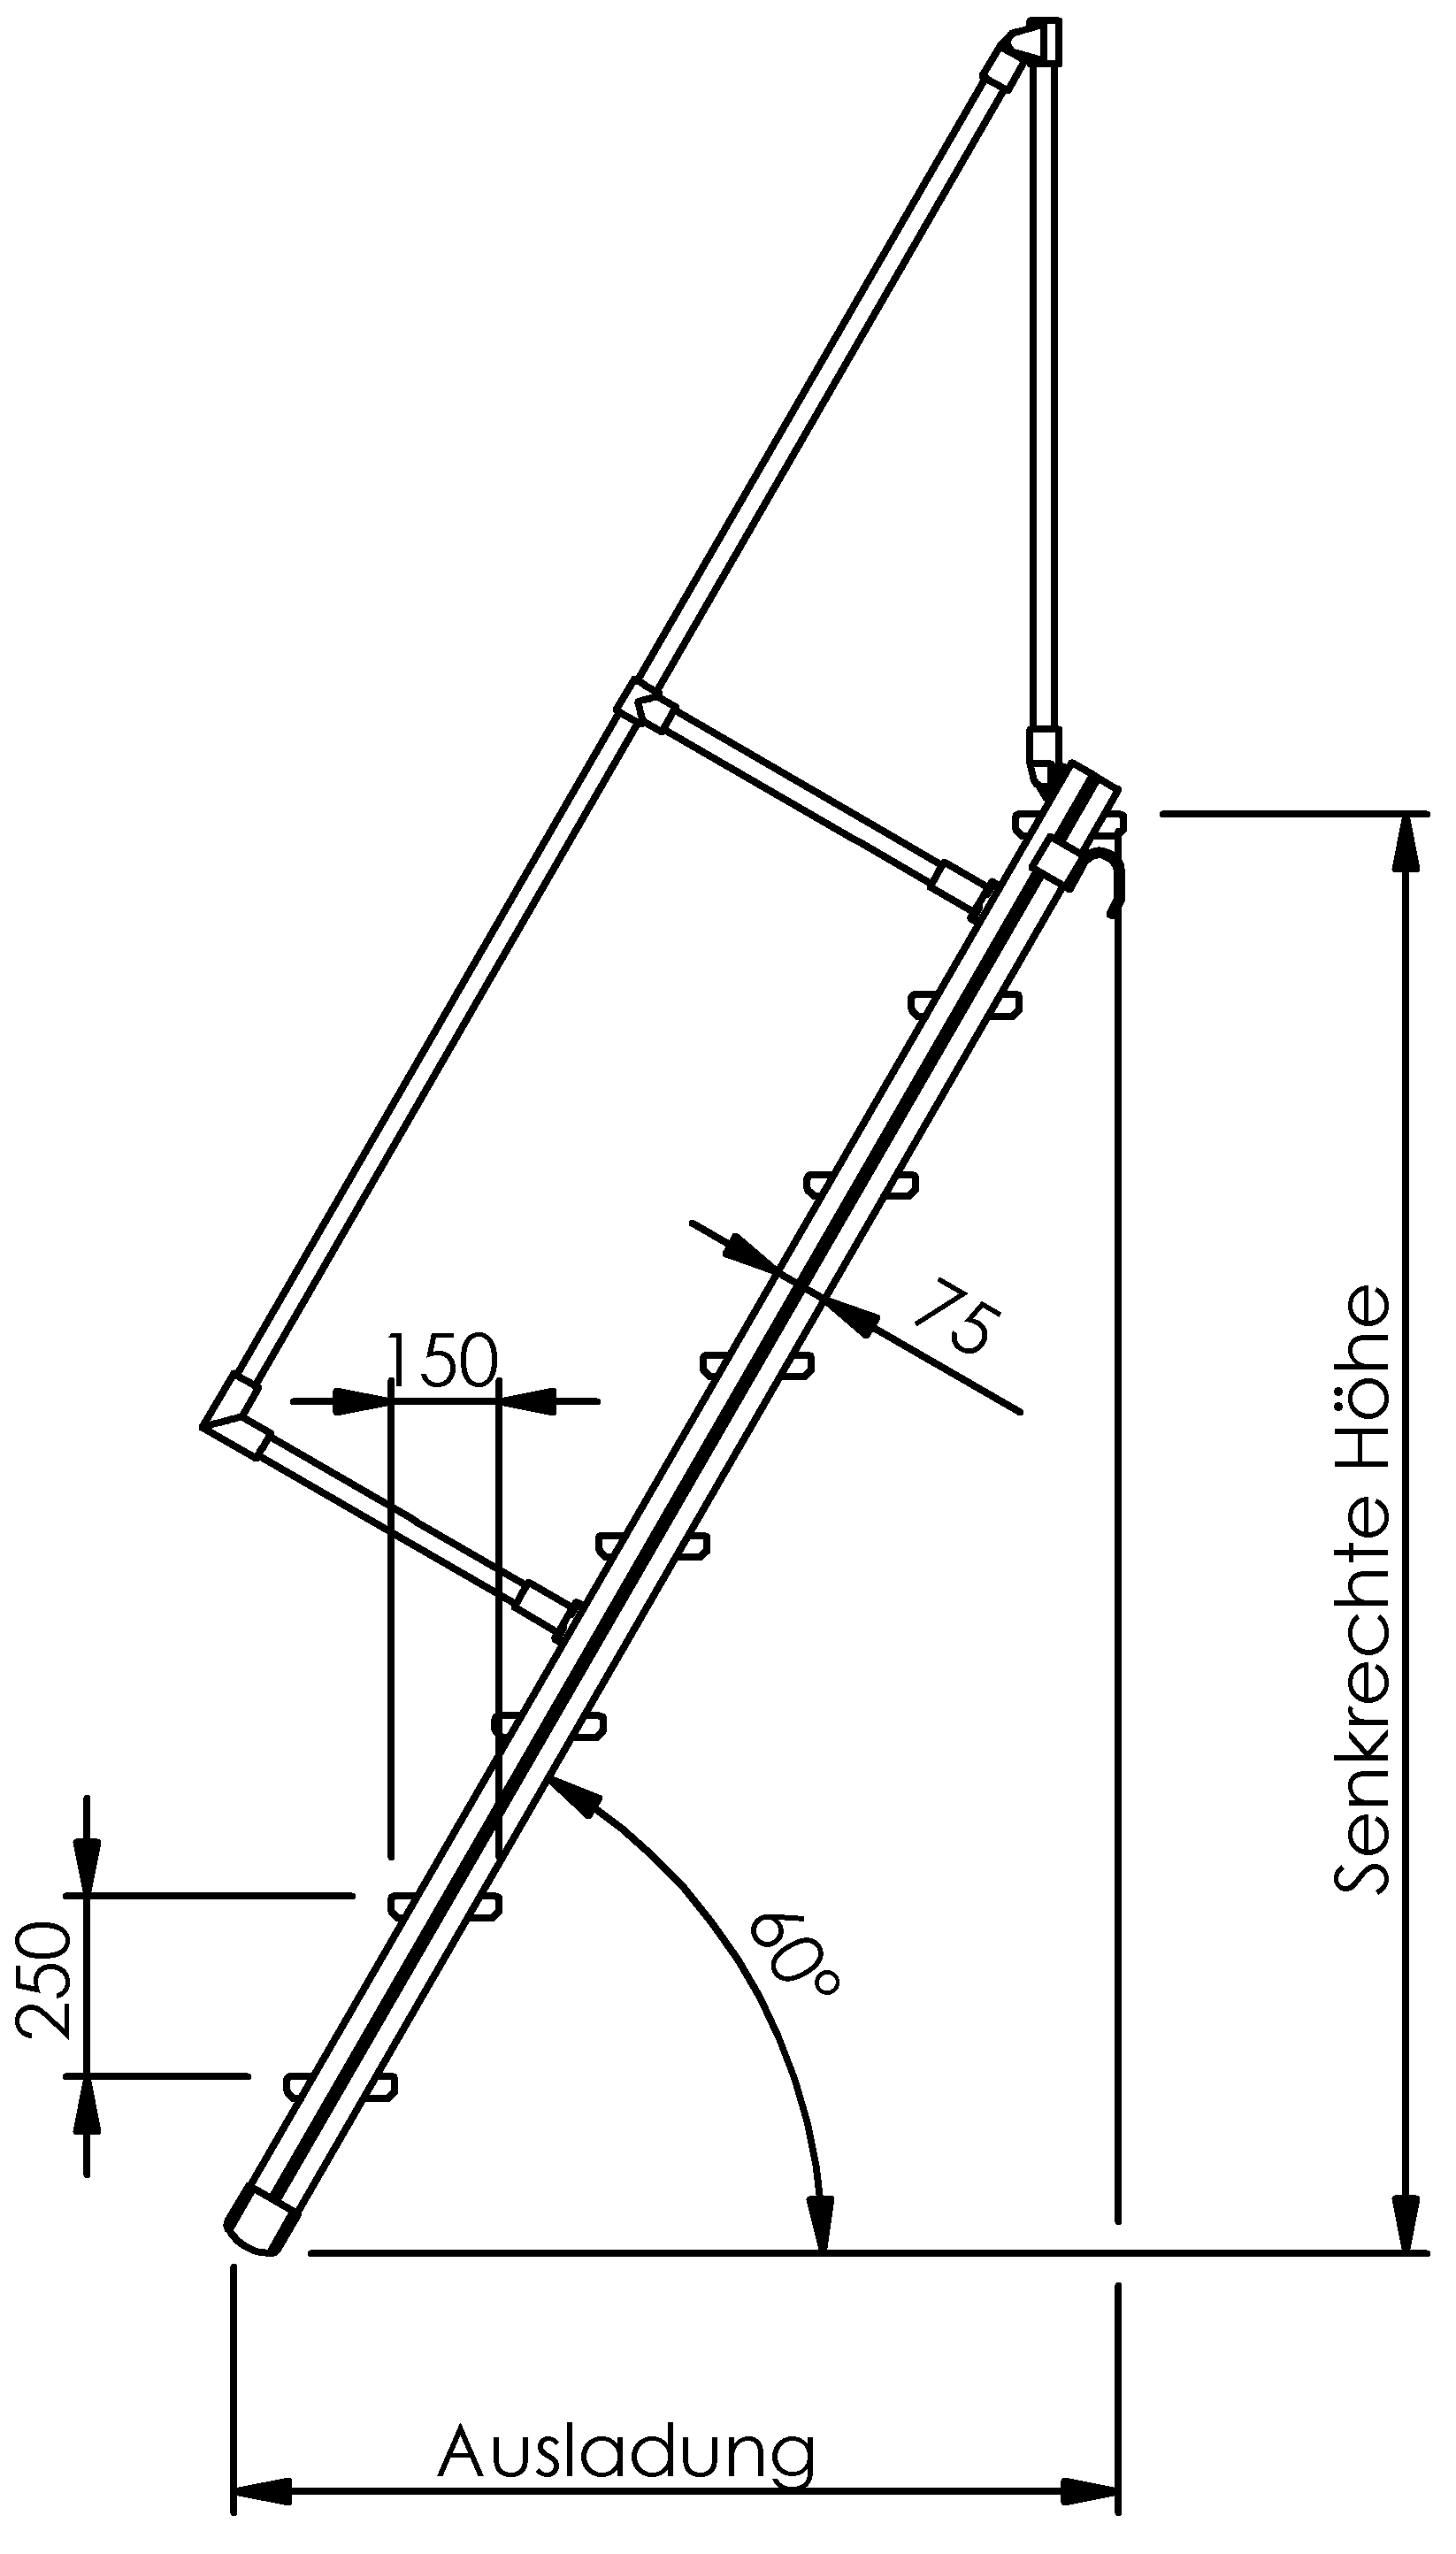 Selbstbautreppen, LW 500mm, Stufen aus Alu